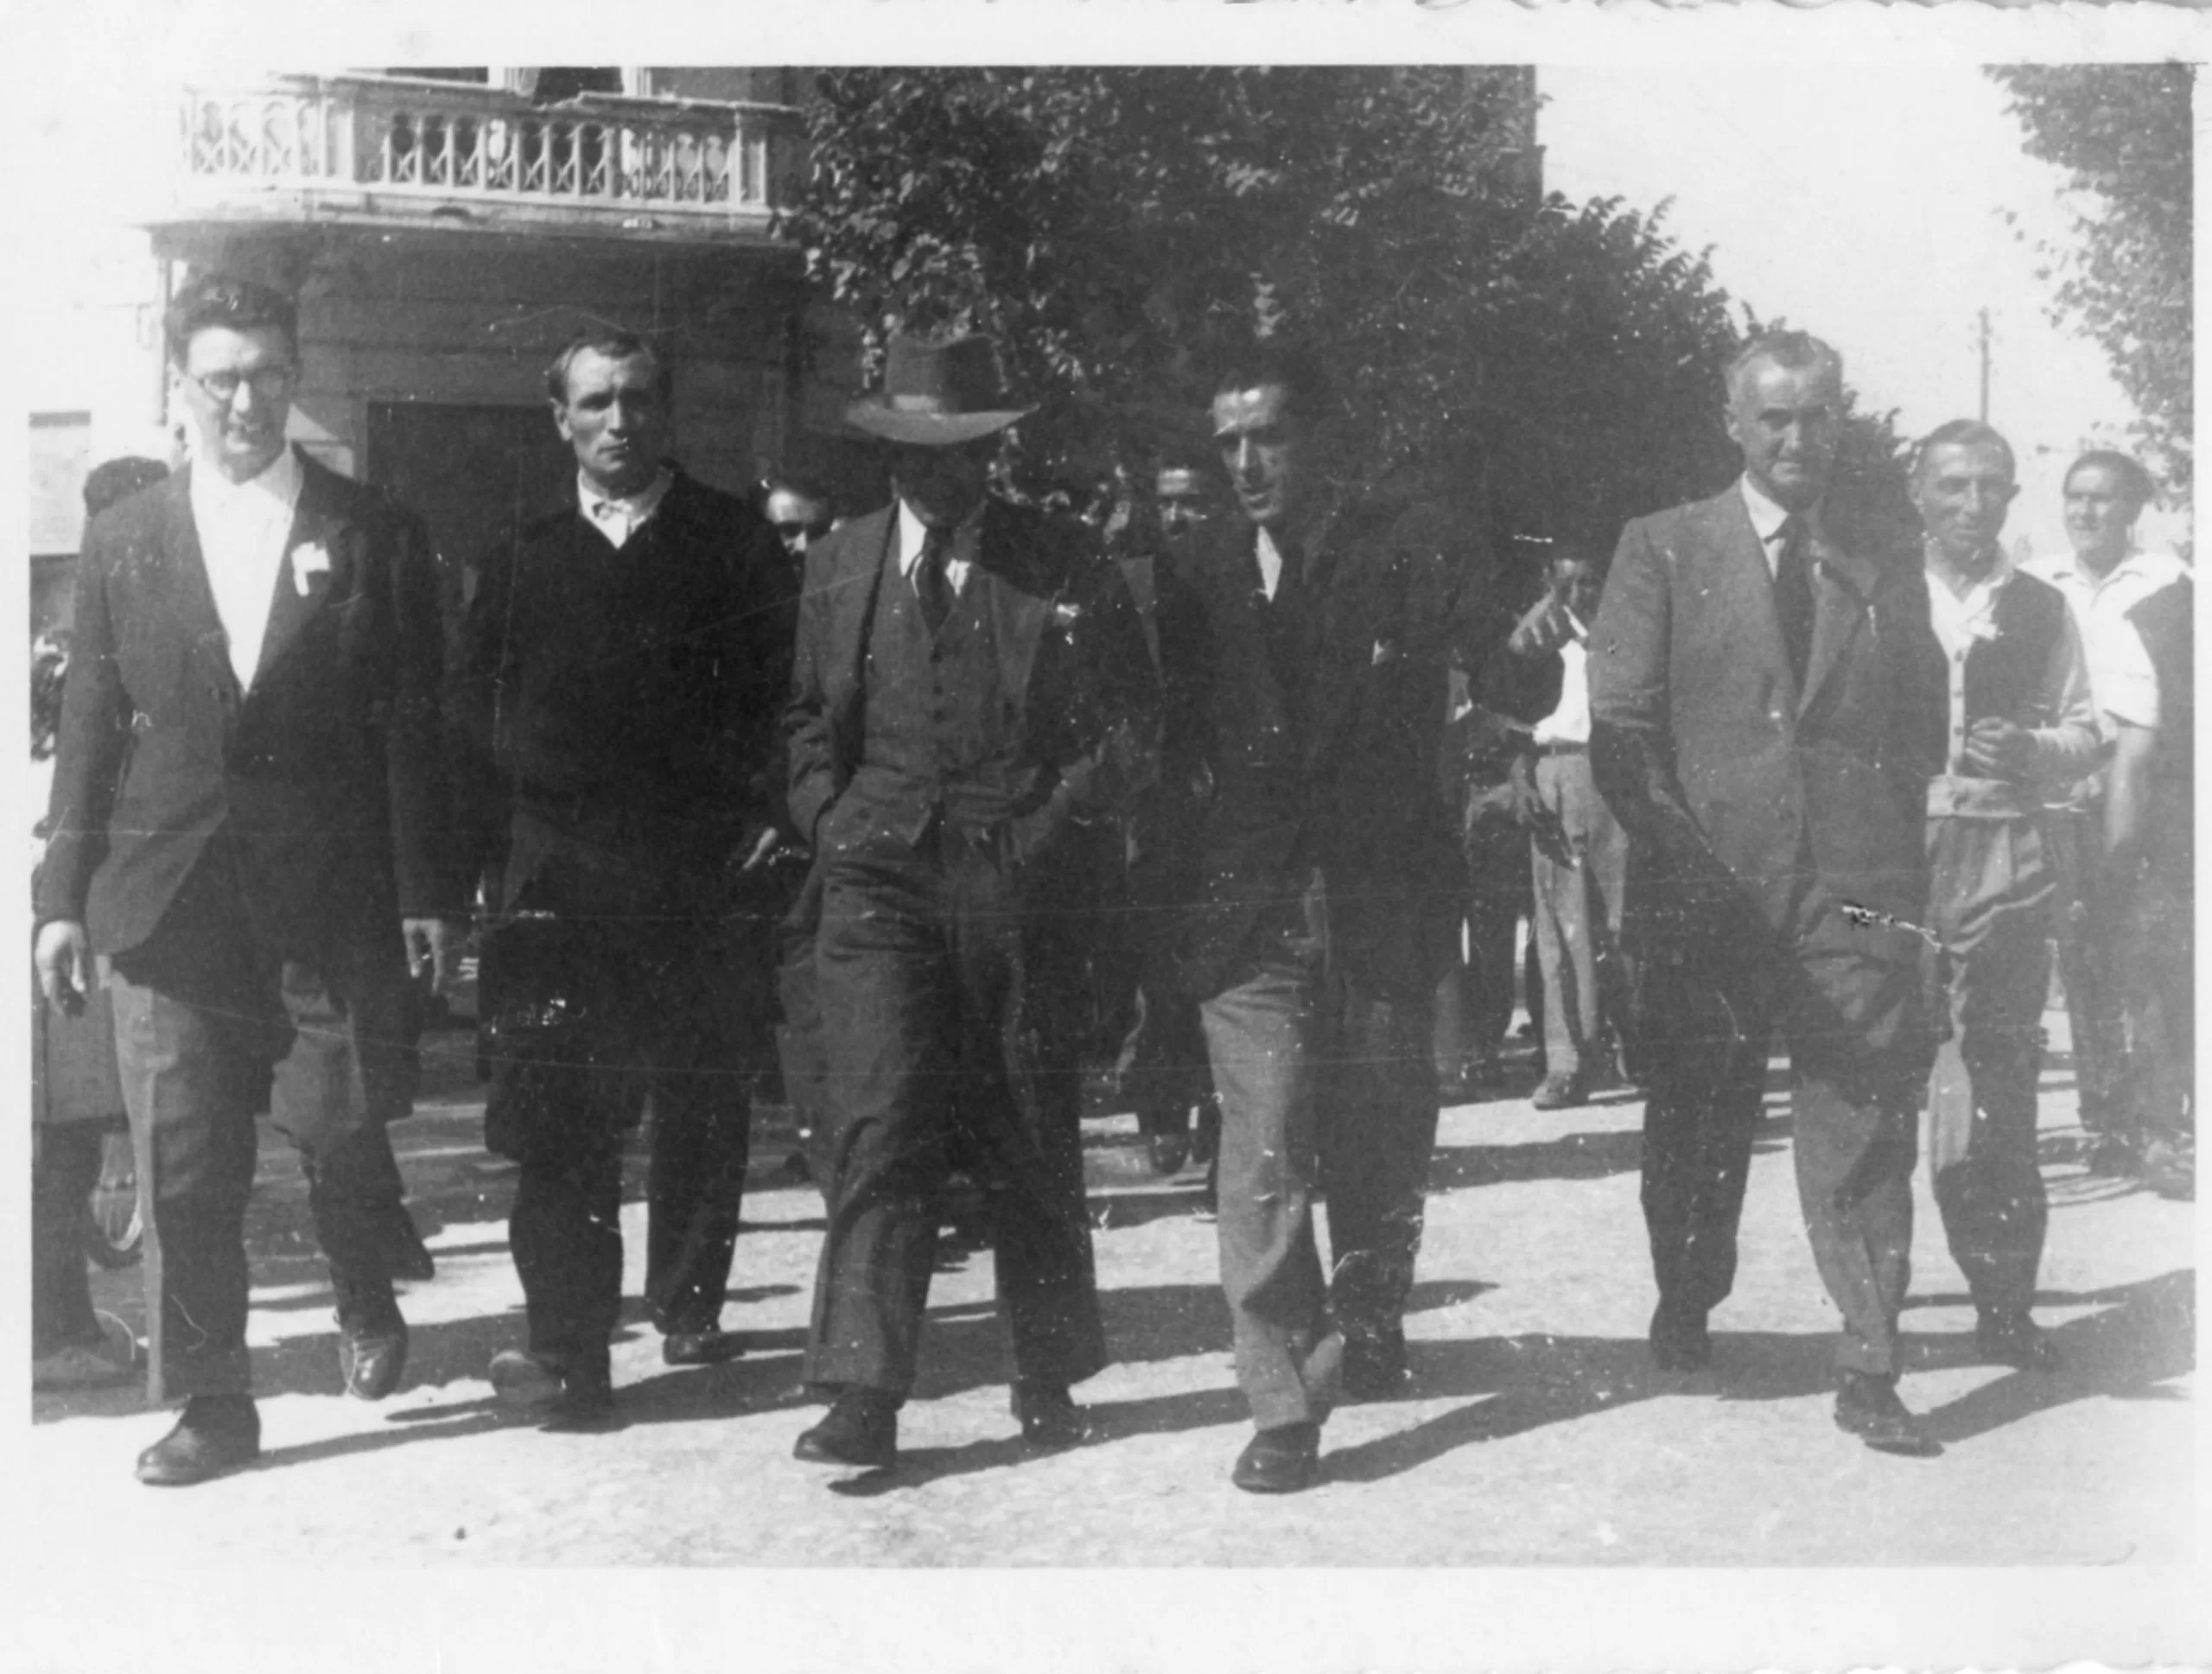 Primi anni '50. Cattolica. Al centro, col cappello, Umberto Terracini. A destra Giuseppe Ricci